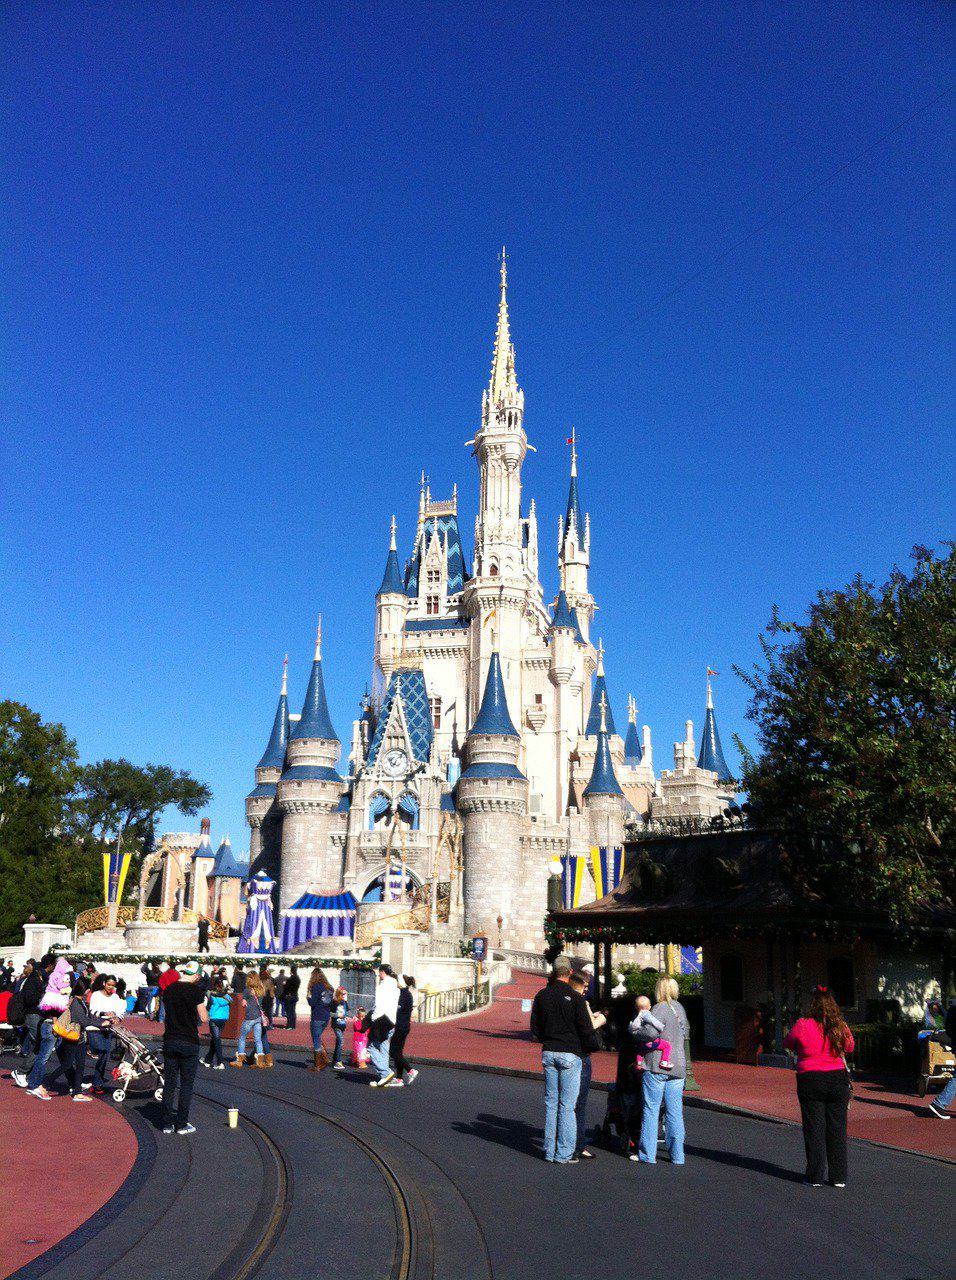 Disney Stroller Rules - Magic Kingdom Disney stroller policy